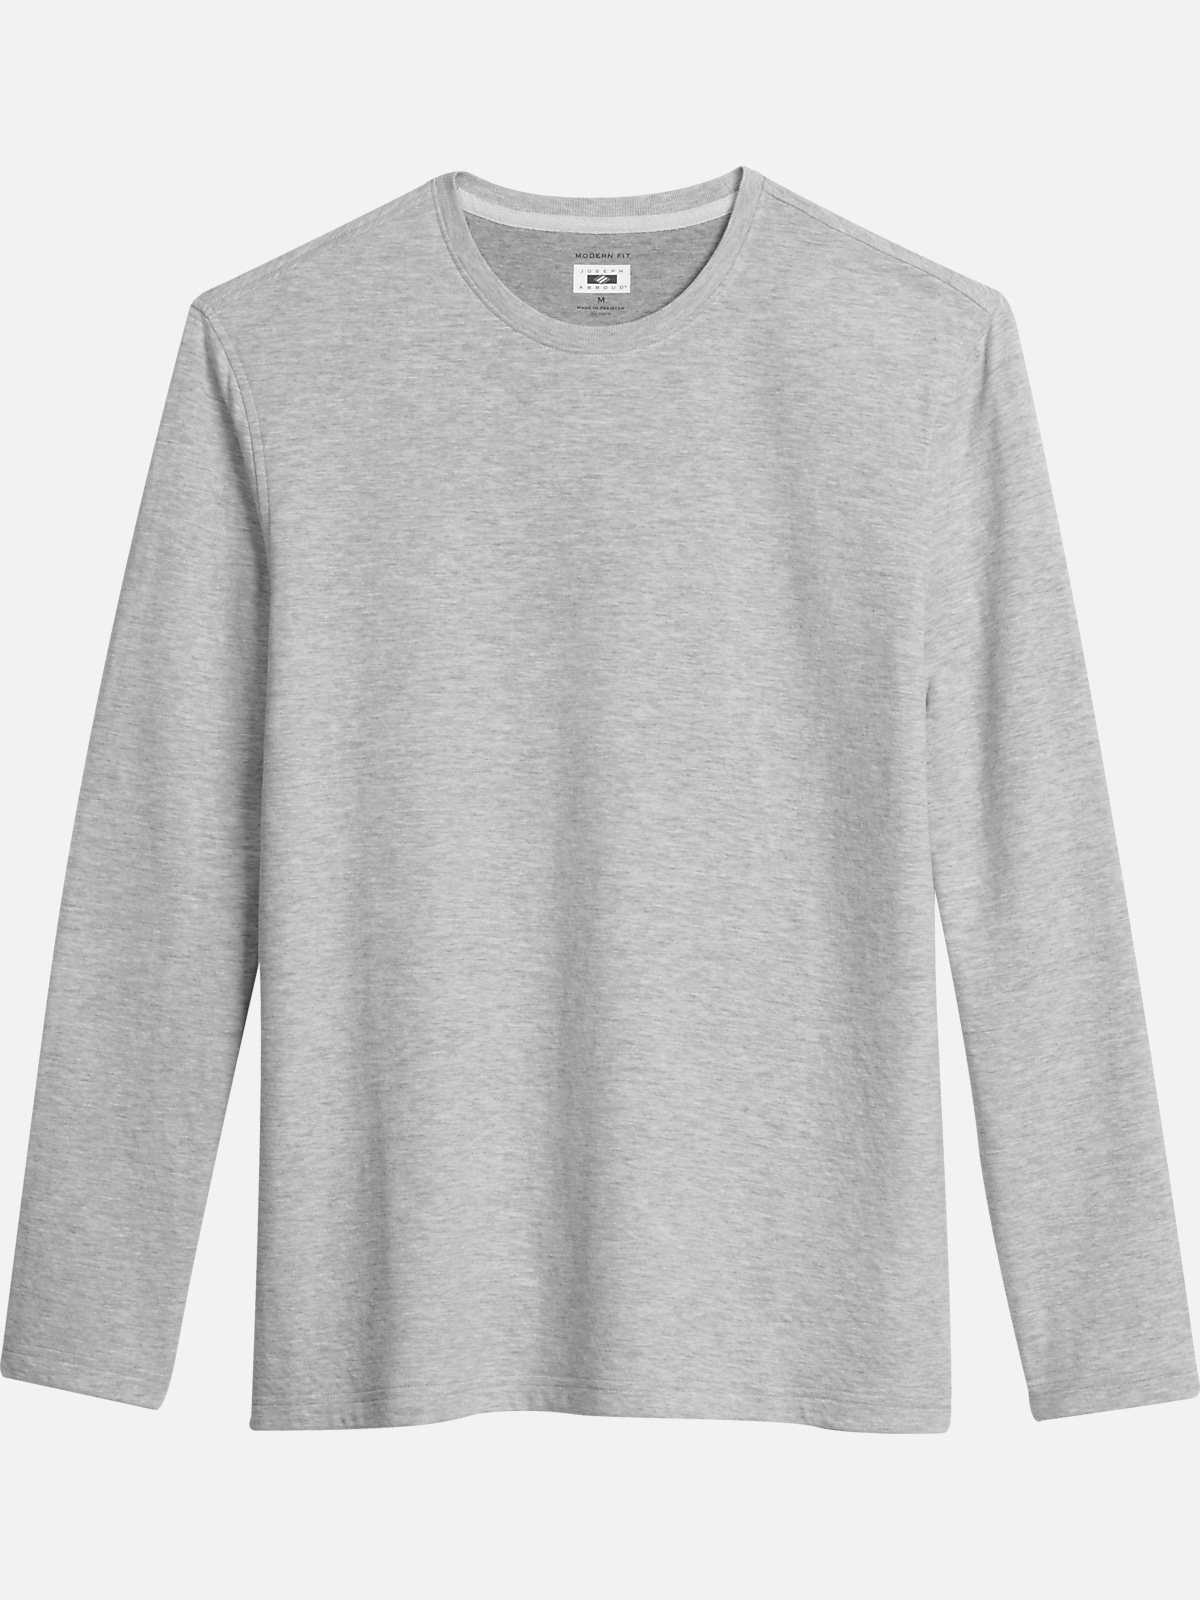 Joseph Abboud Modern Fit Knit Crewneck T-Shirt | All Sale| Men's Wearhouse